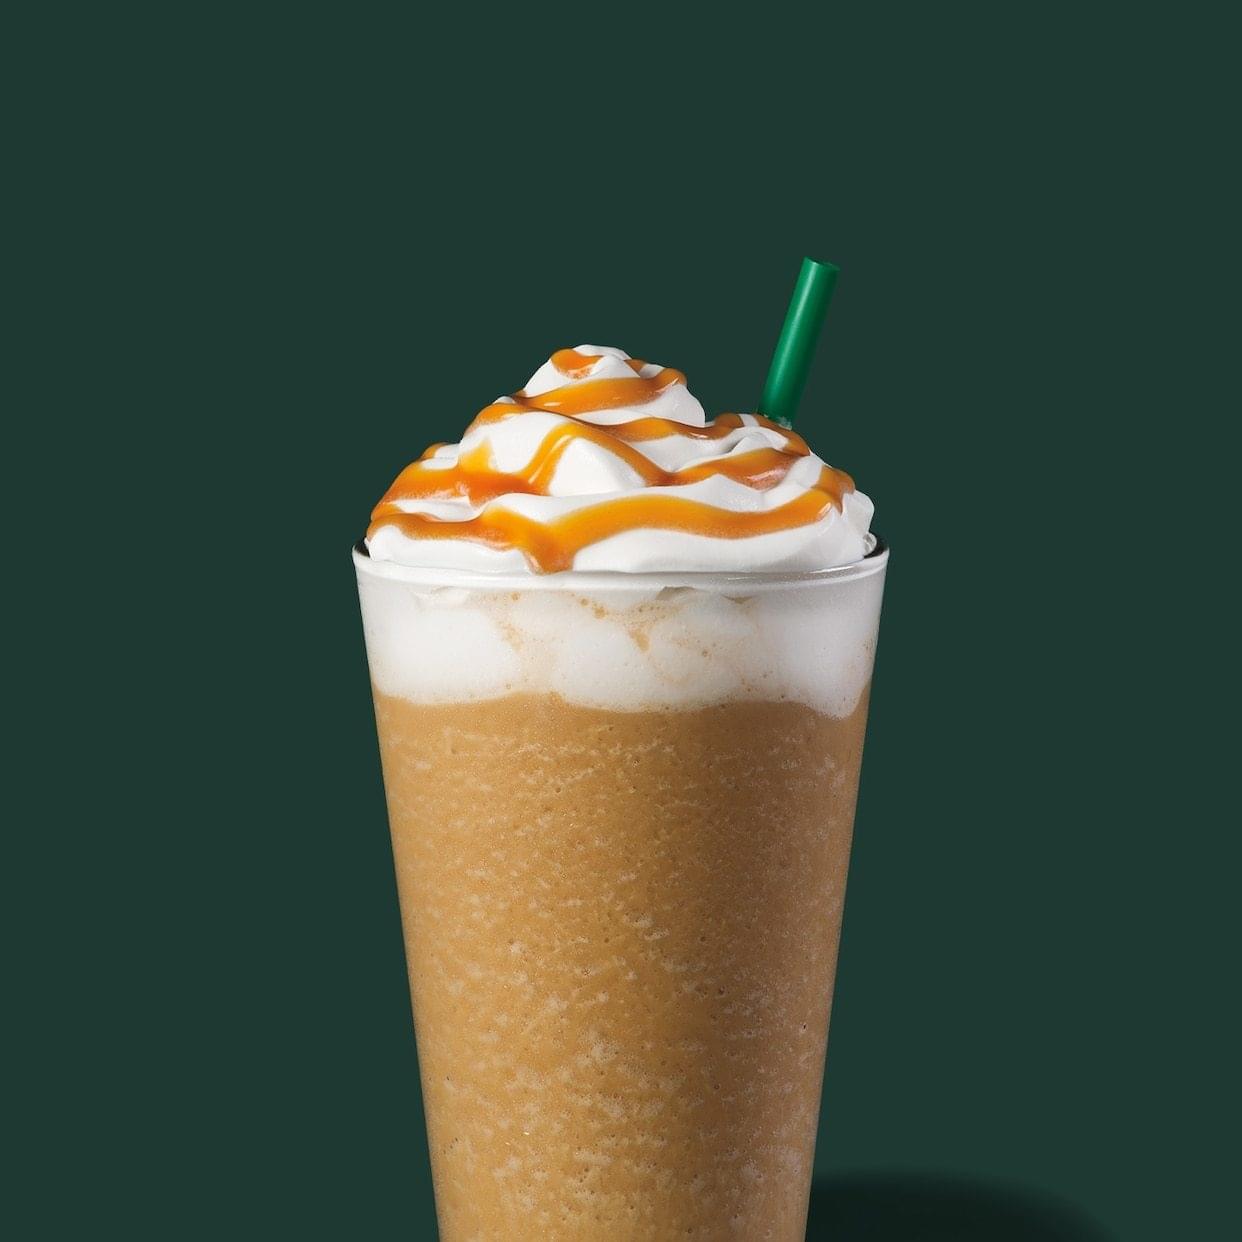 Starbucks Venti Caramel Frappuccino Nutrition Facts